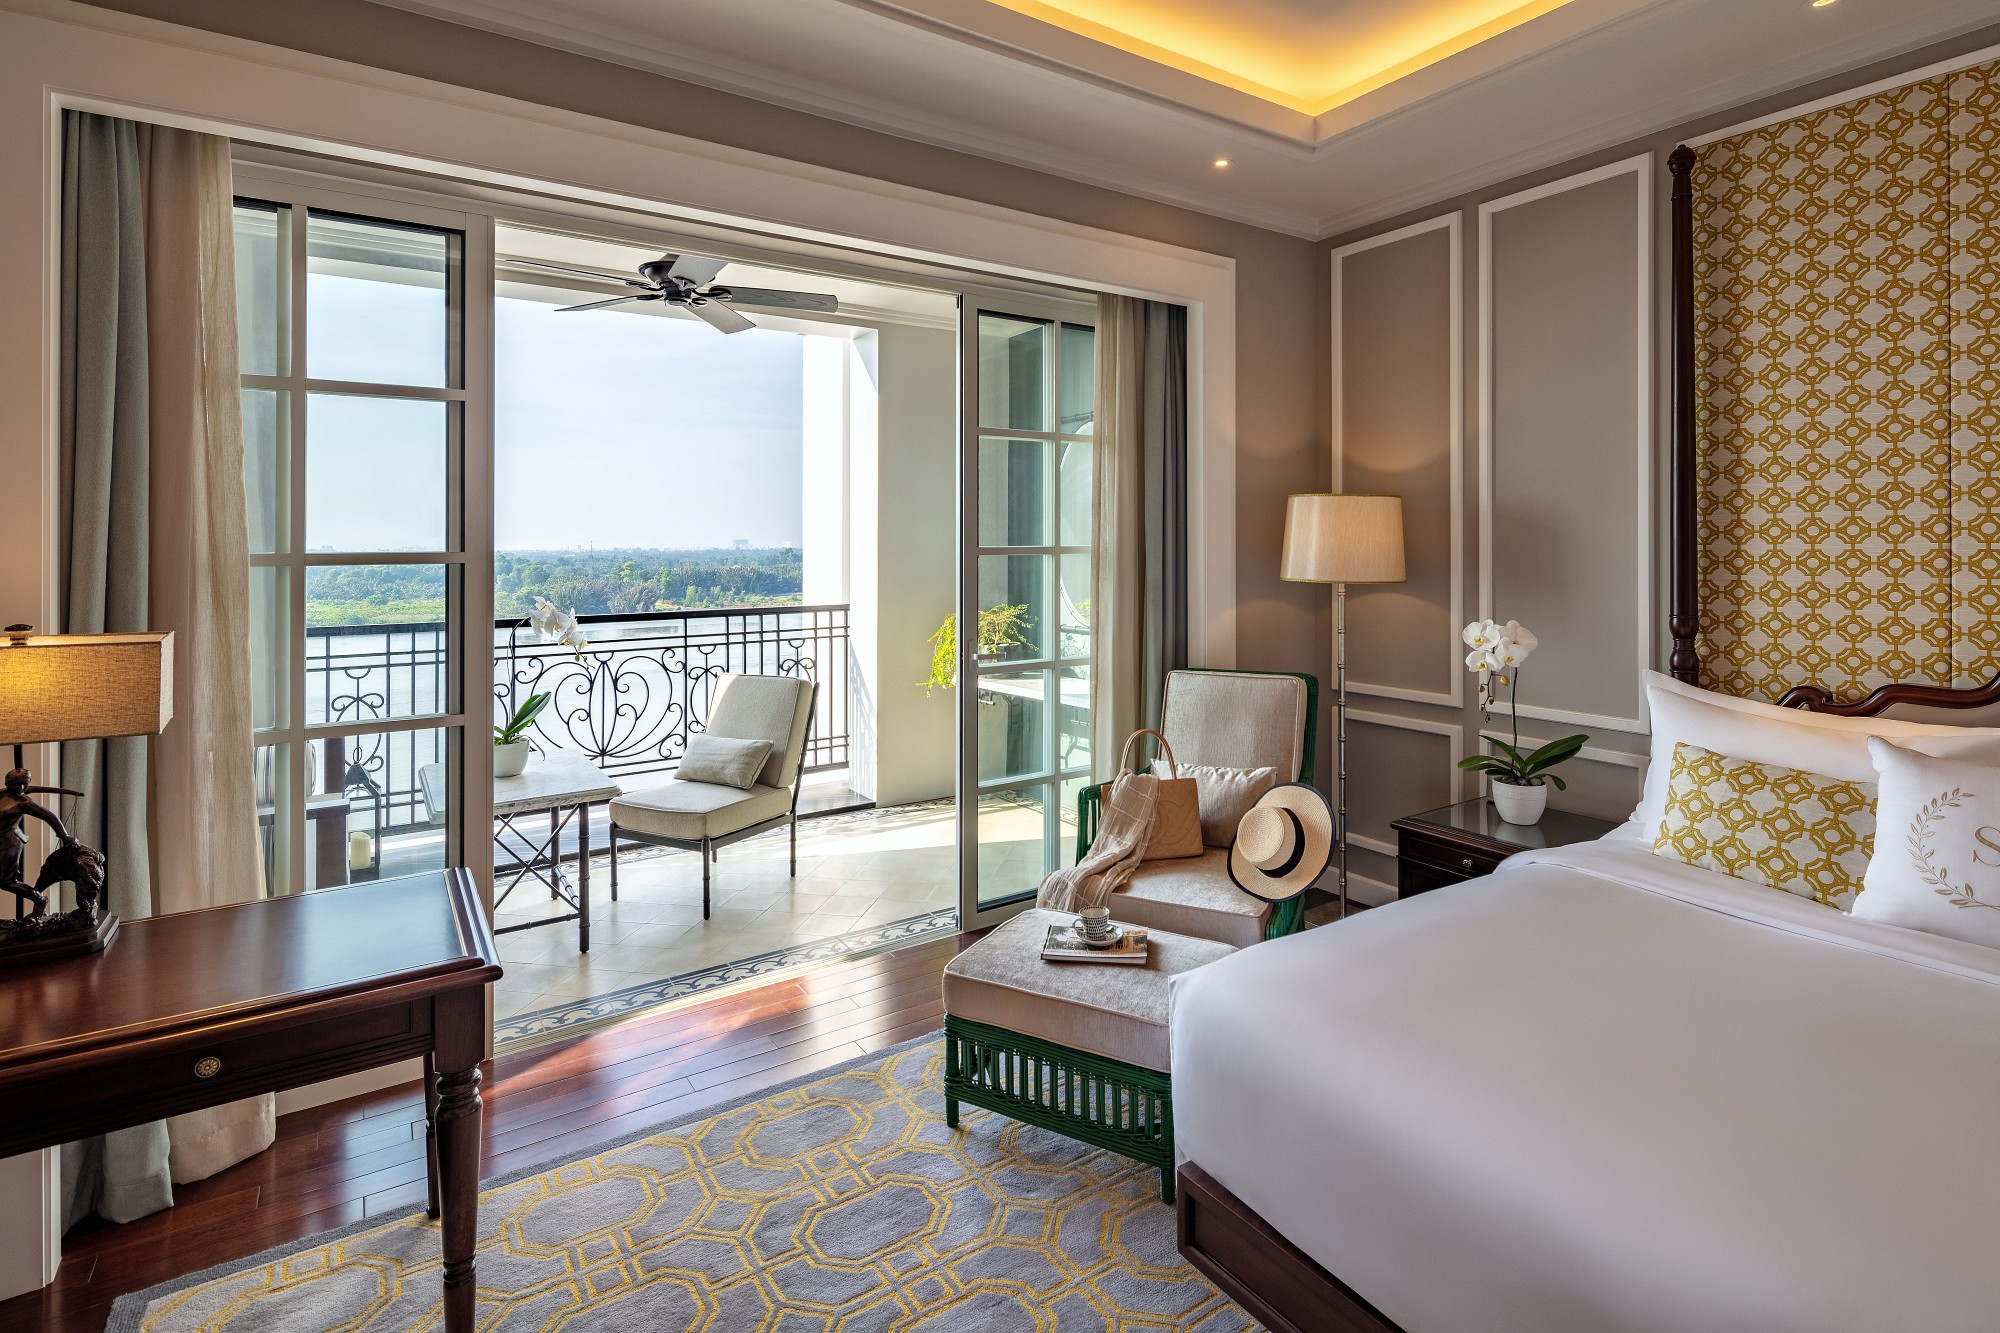 Khách sạn Sài Gòn Côn Đảo: Khu nghỉ dưỡng 3 sao